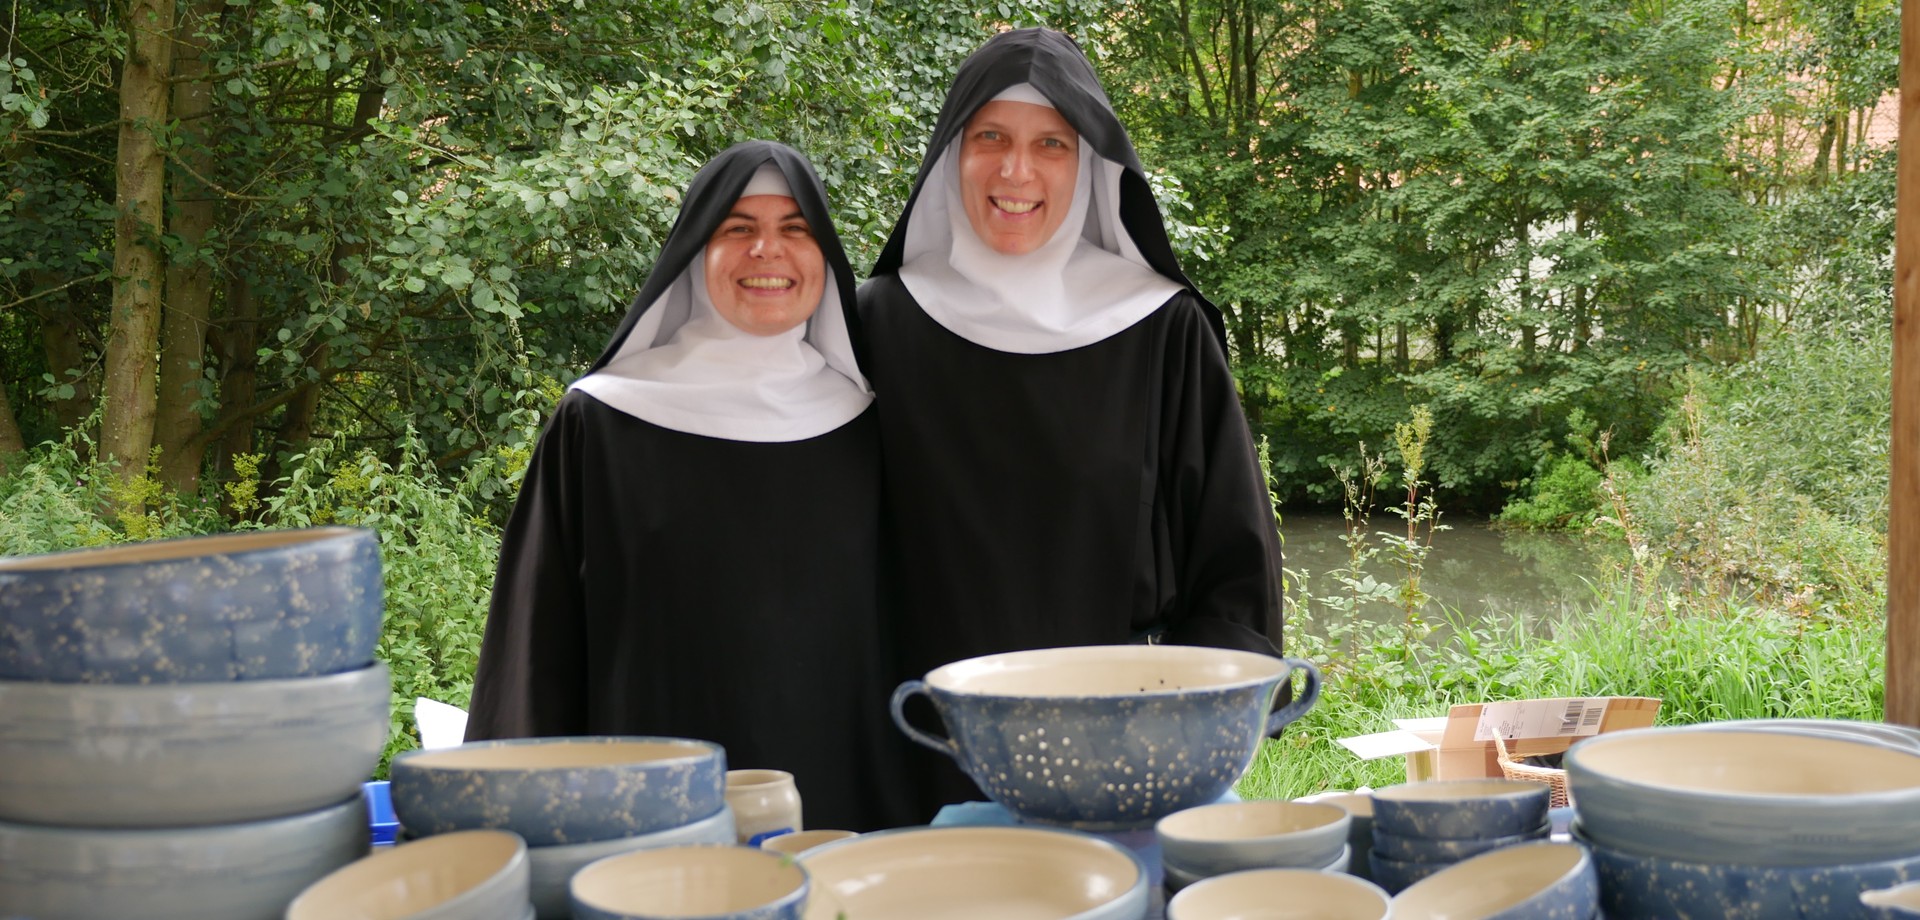 Auf dem Foto zeigen Schwester Judith und Schwester Caterina ihre Keramikwaren.

Foto: LWL